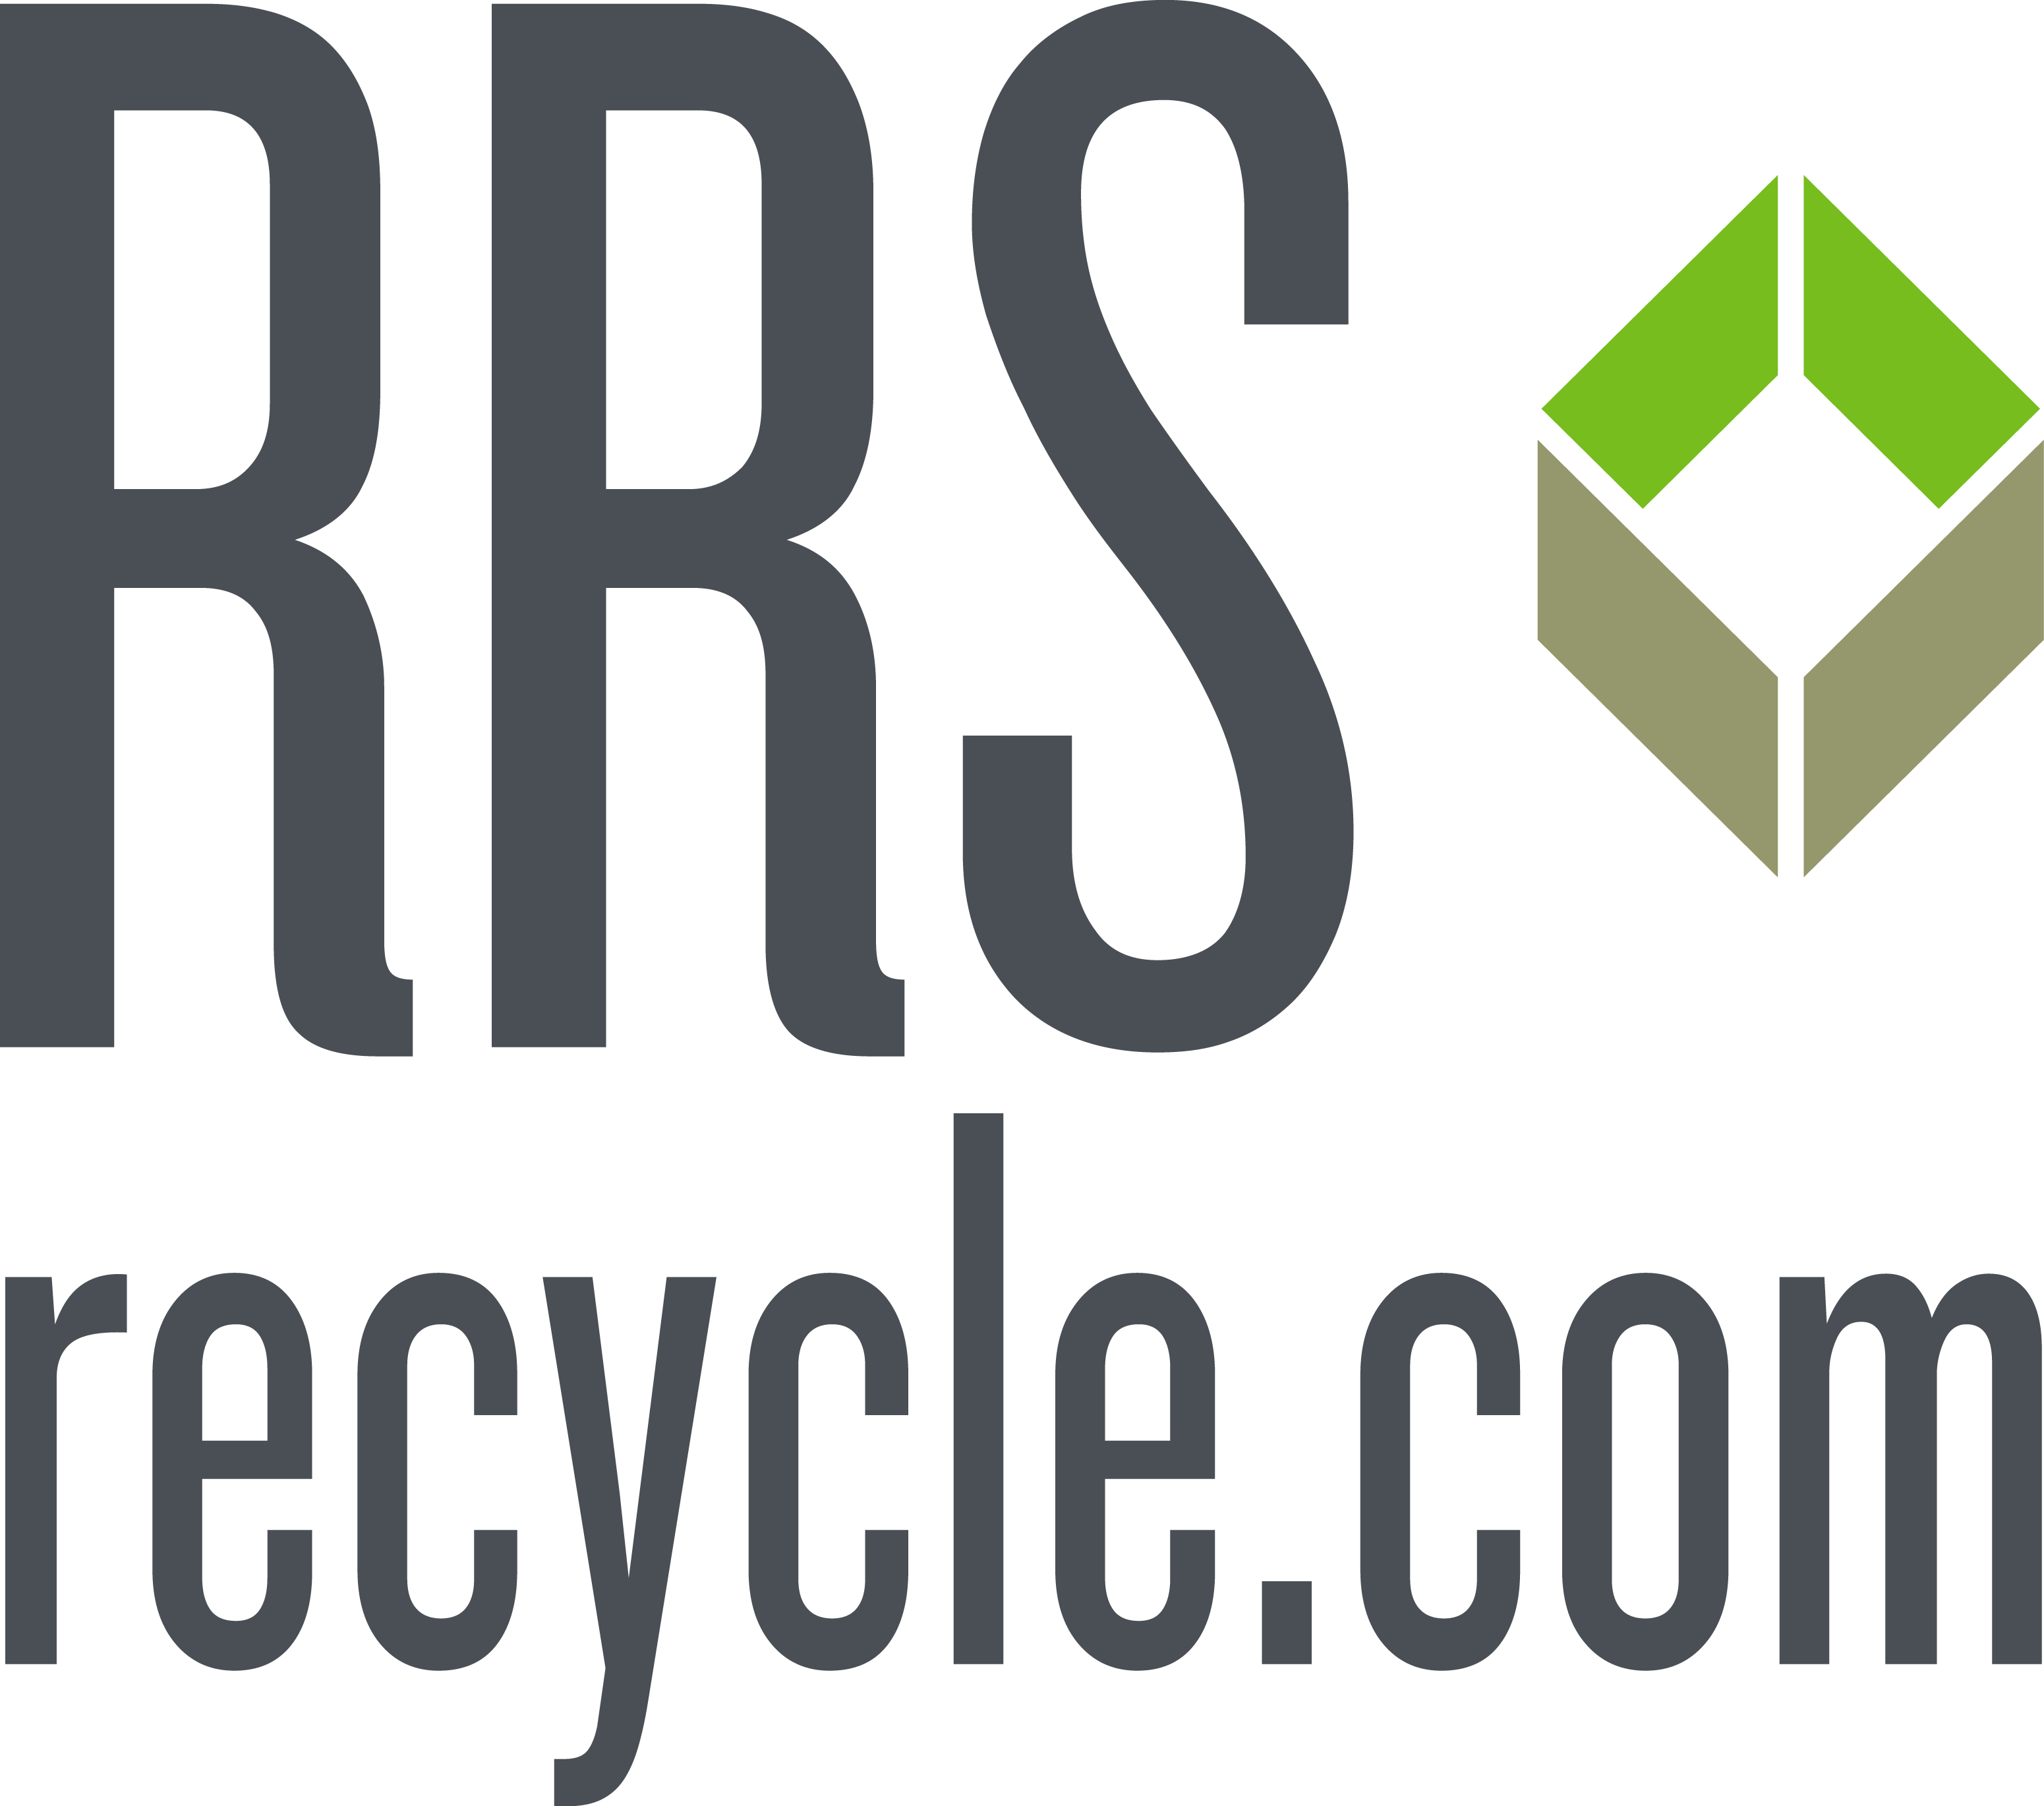 RRS logo